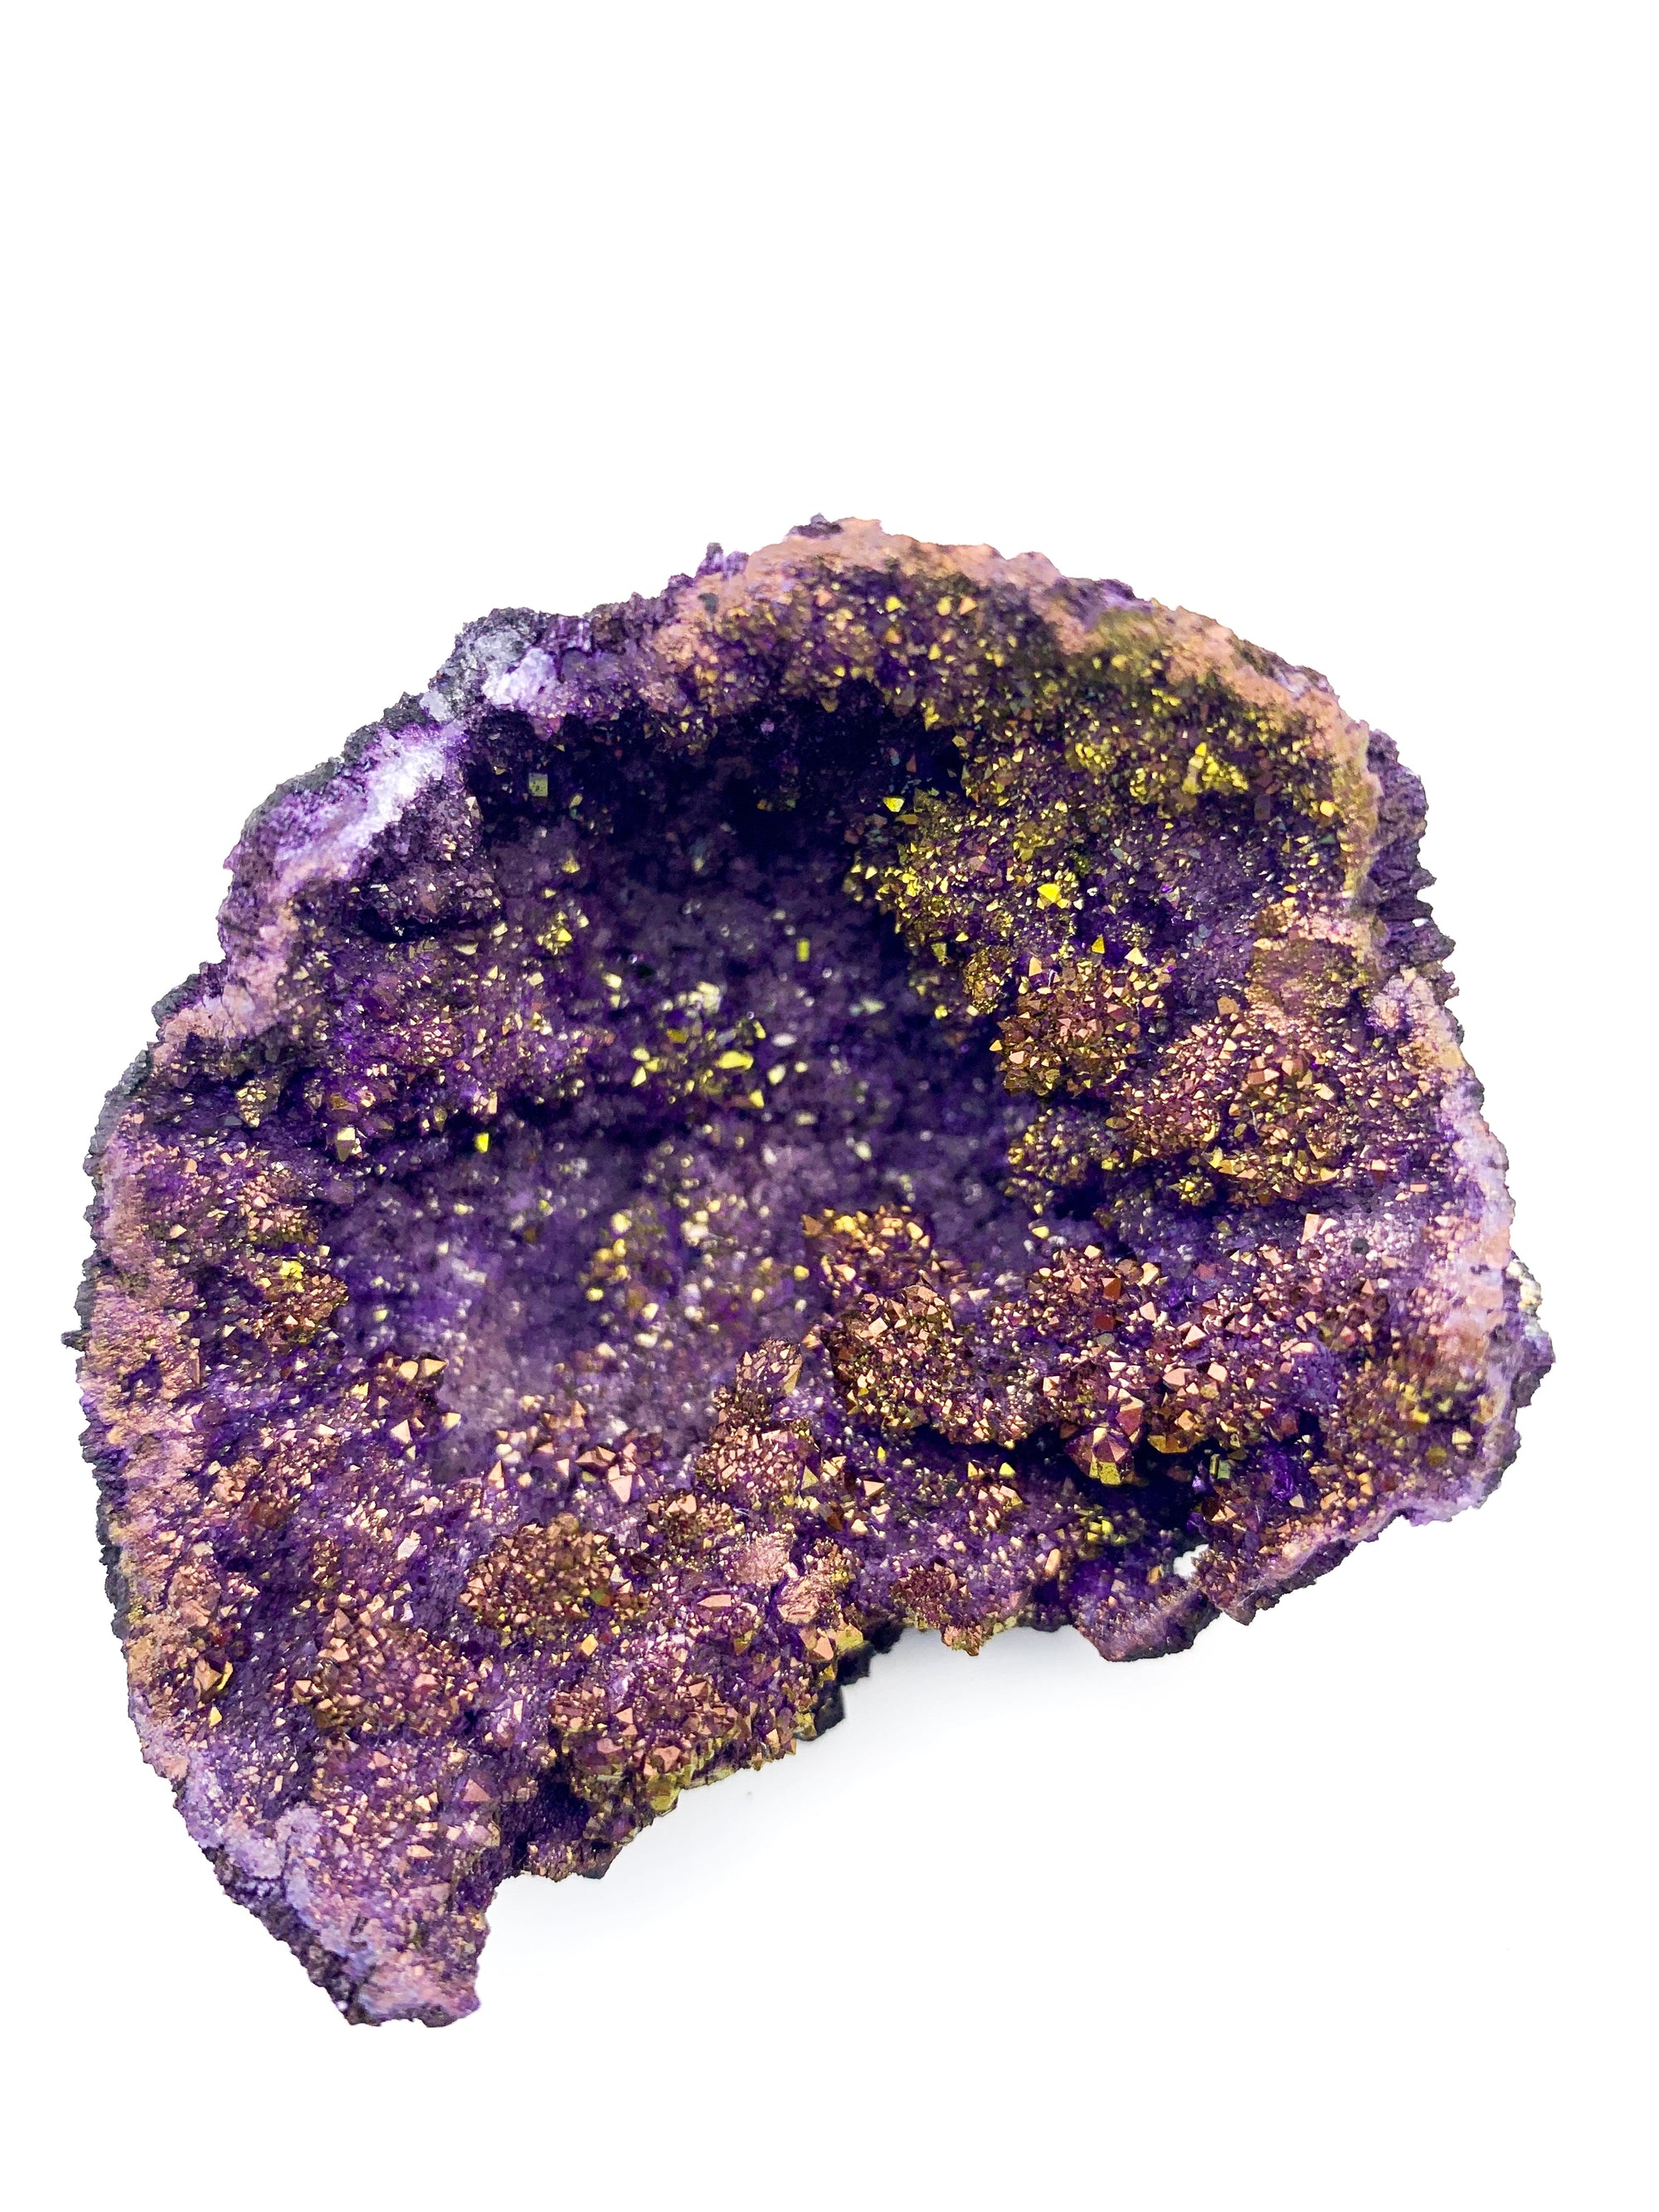 Purple & Gold Titanium Coated Moroccan Quartz Geode Halves